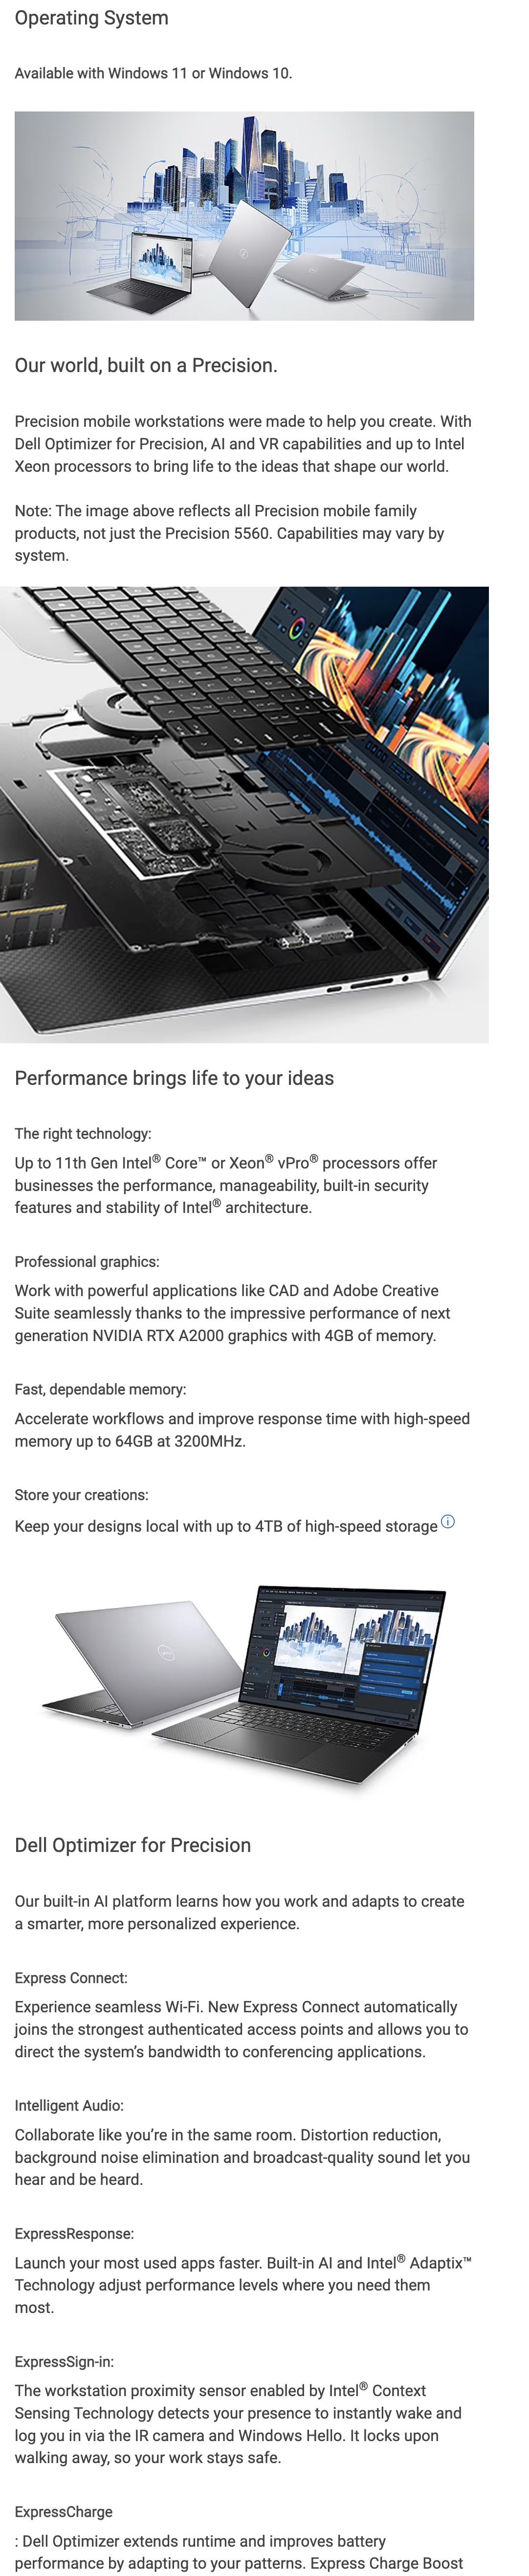 Dell-Precision-5560-Laptop-Core-i7-11800H-16GB-RAM-512GB-SSD-4GNVIDIATI200-W1OPRO-15.6-Inches-FHD-Aluminum-Titan-Gray-Description-1